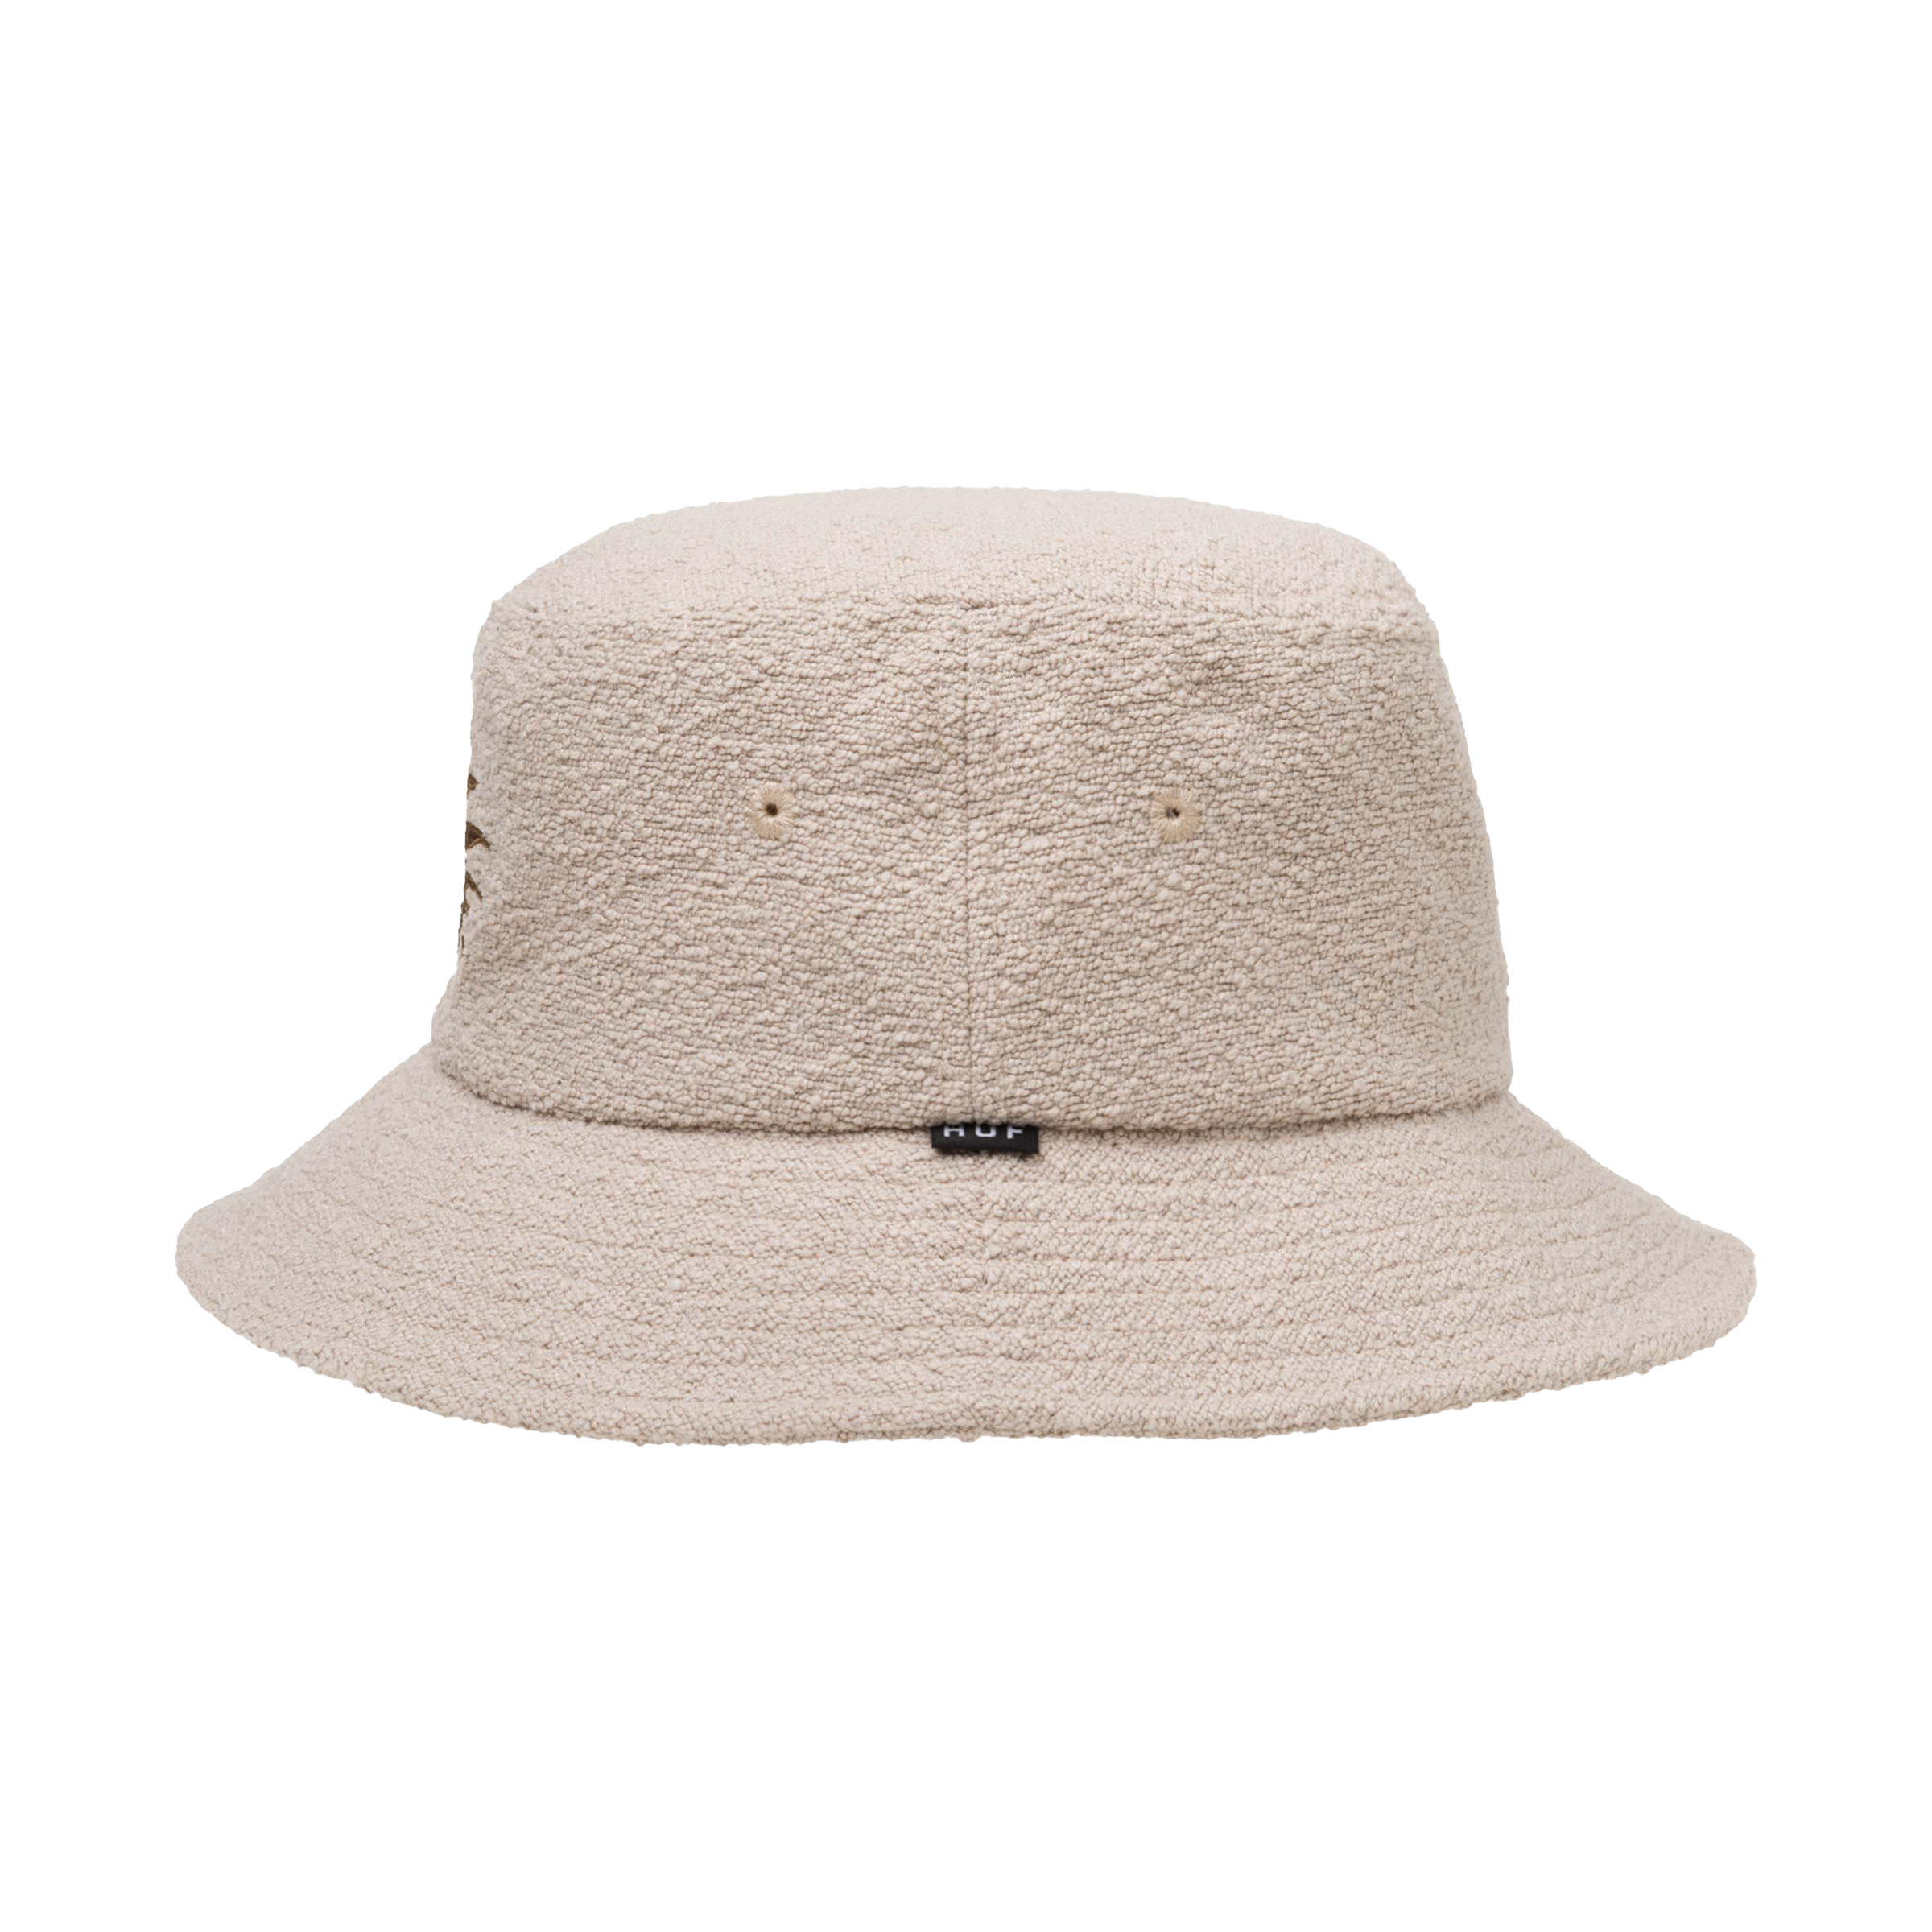 Huf Fire Bucket Hat in Oatmeal - Size S/M